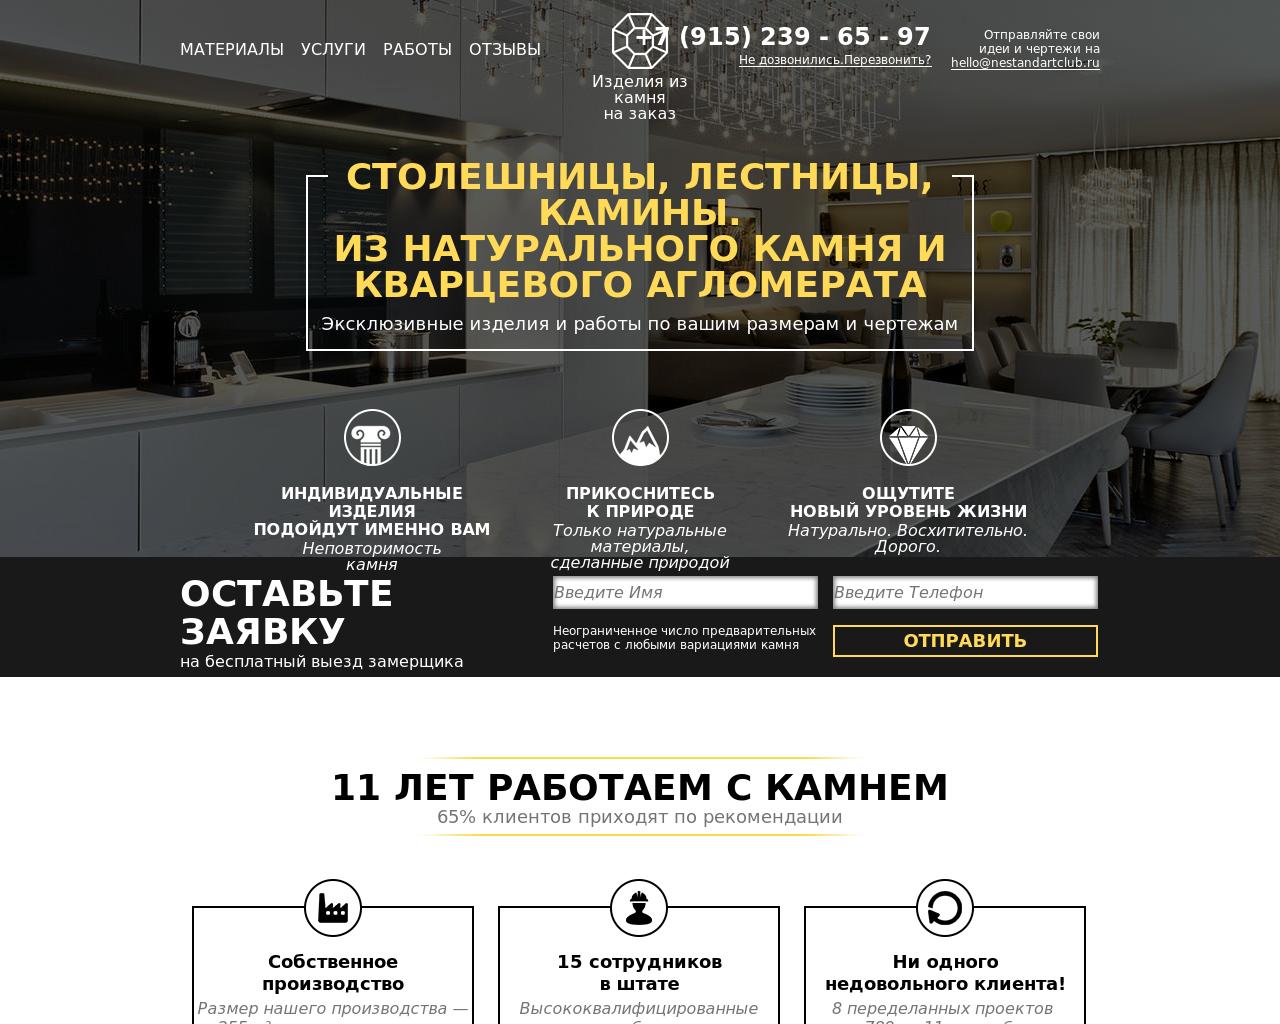 Изображение сайта nestandartclub.ru в разрешении 1280x1024